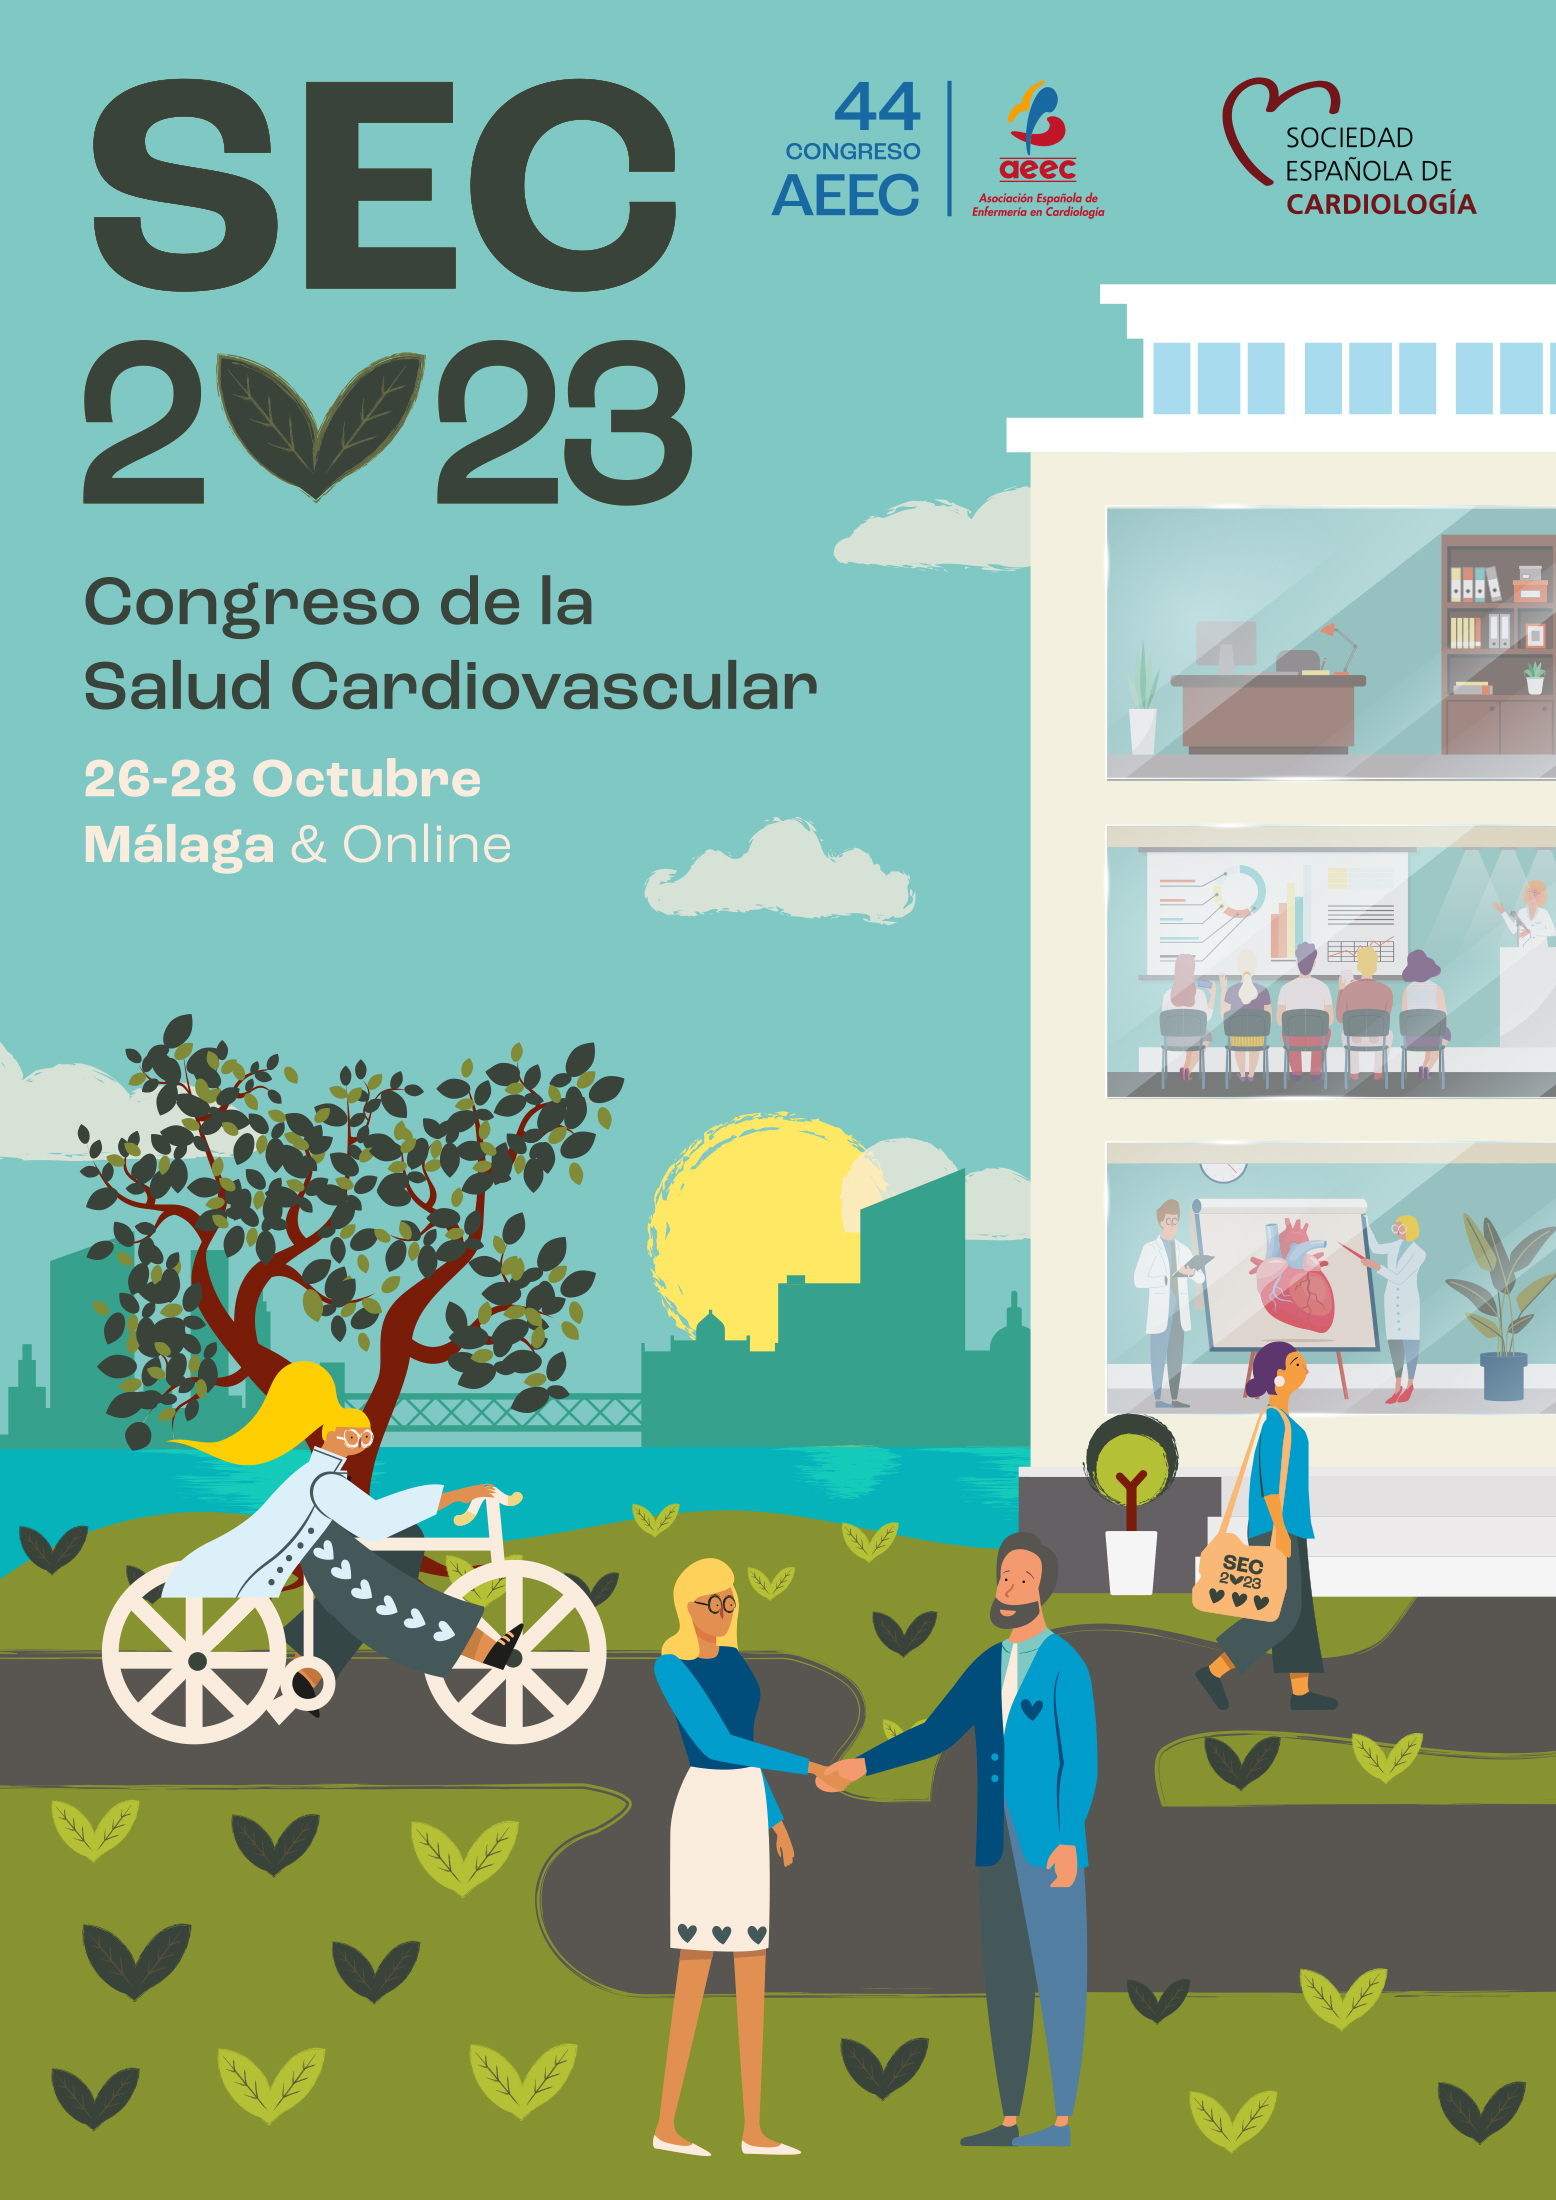 Portada: 44 CONGRESO AEEC - Congreso de la Salud Cardiovascular